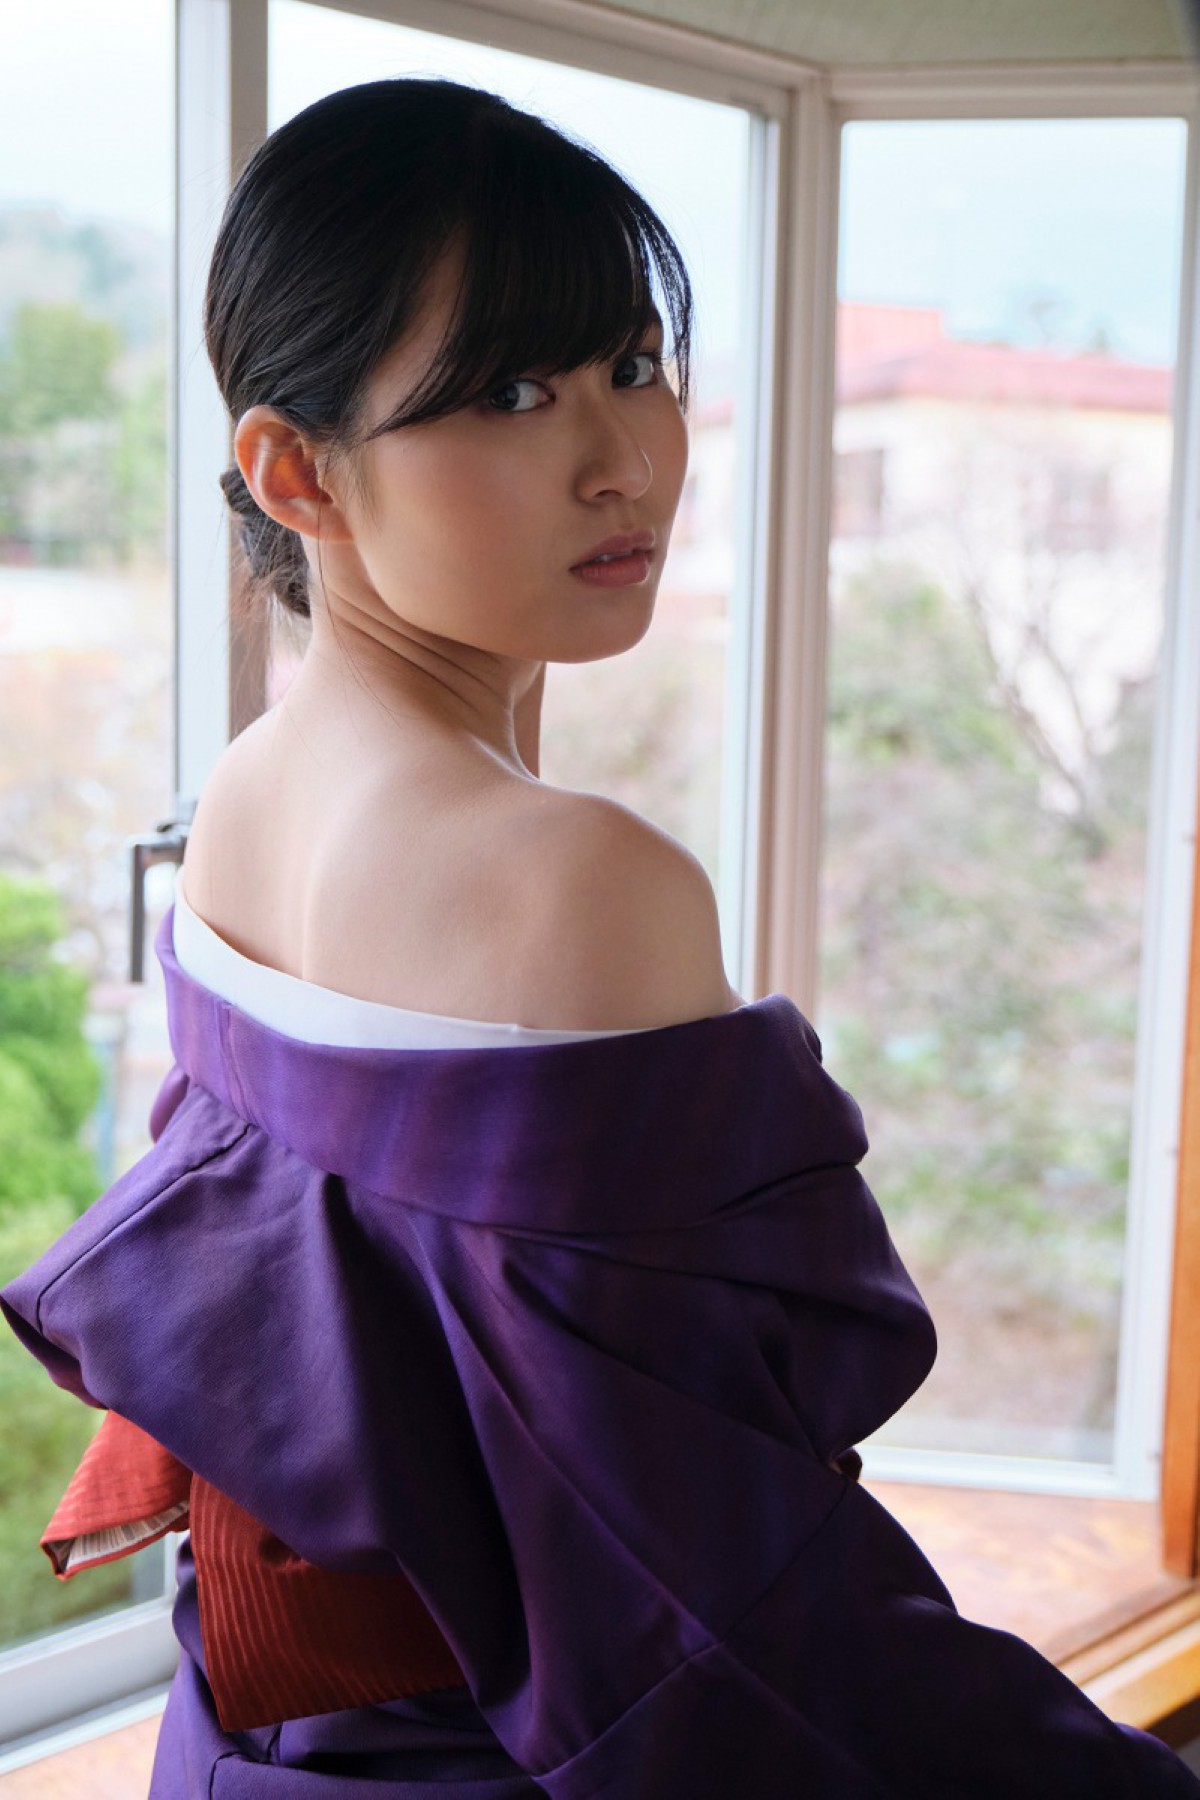 Weekly Taishu Photobook 2021 10 15 Miri Ichika 未梨一花 Unforgettable Woman 0045 0480015378.jpg